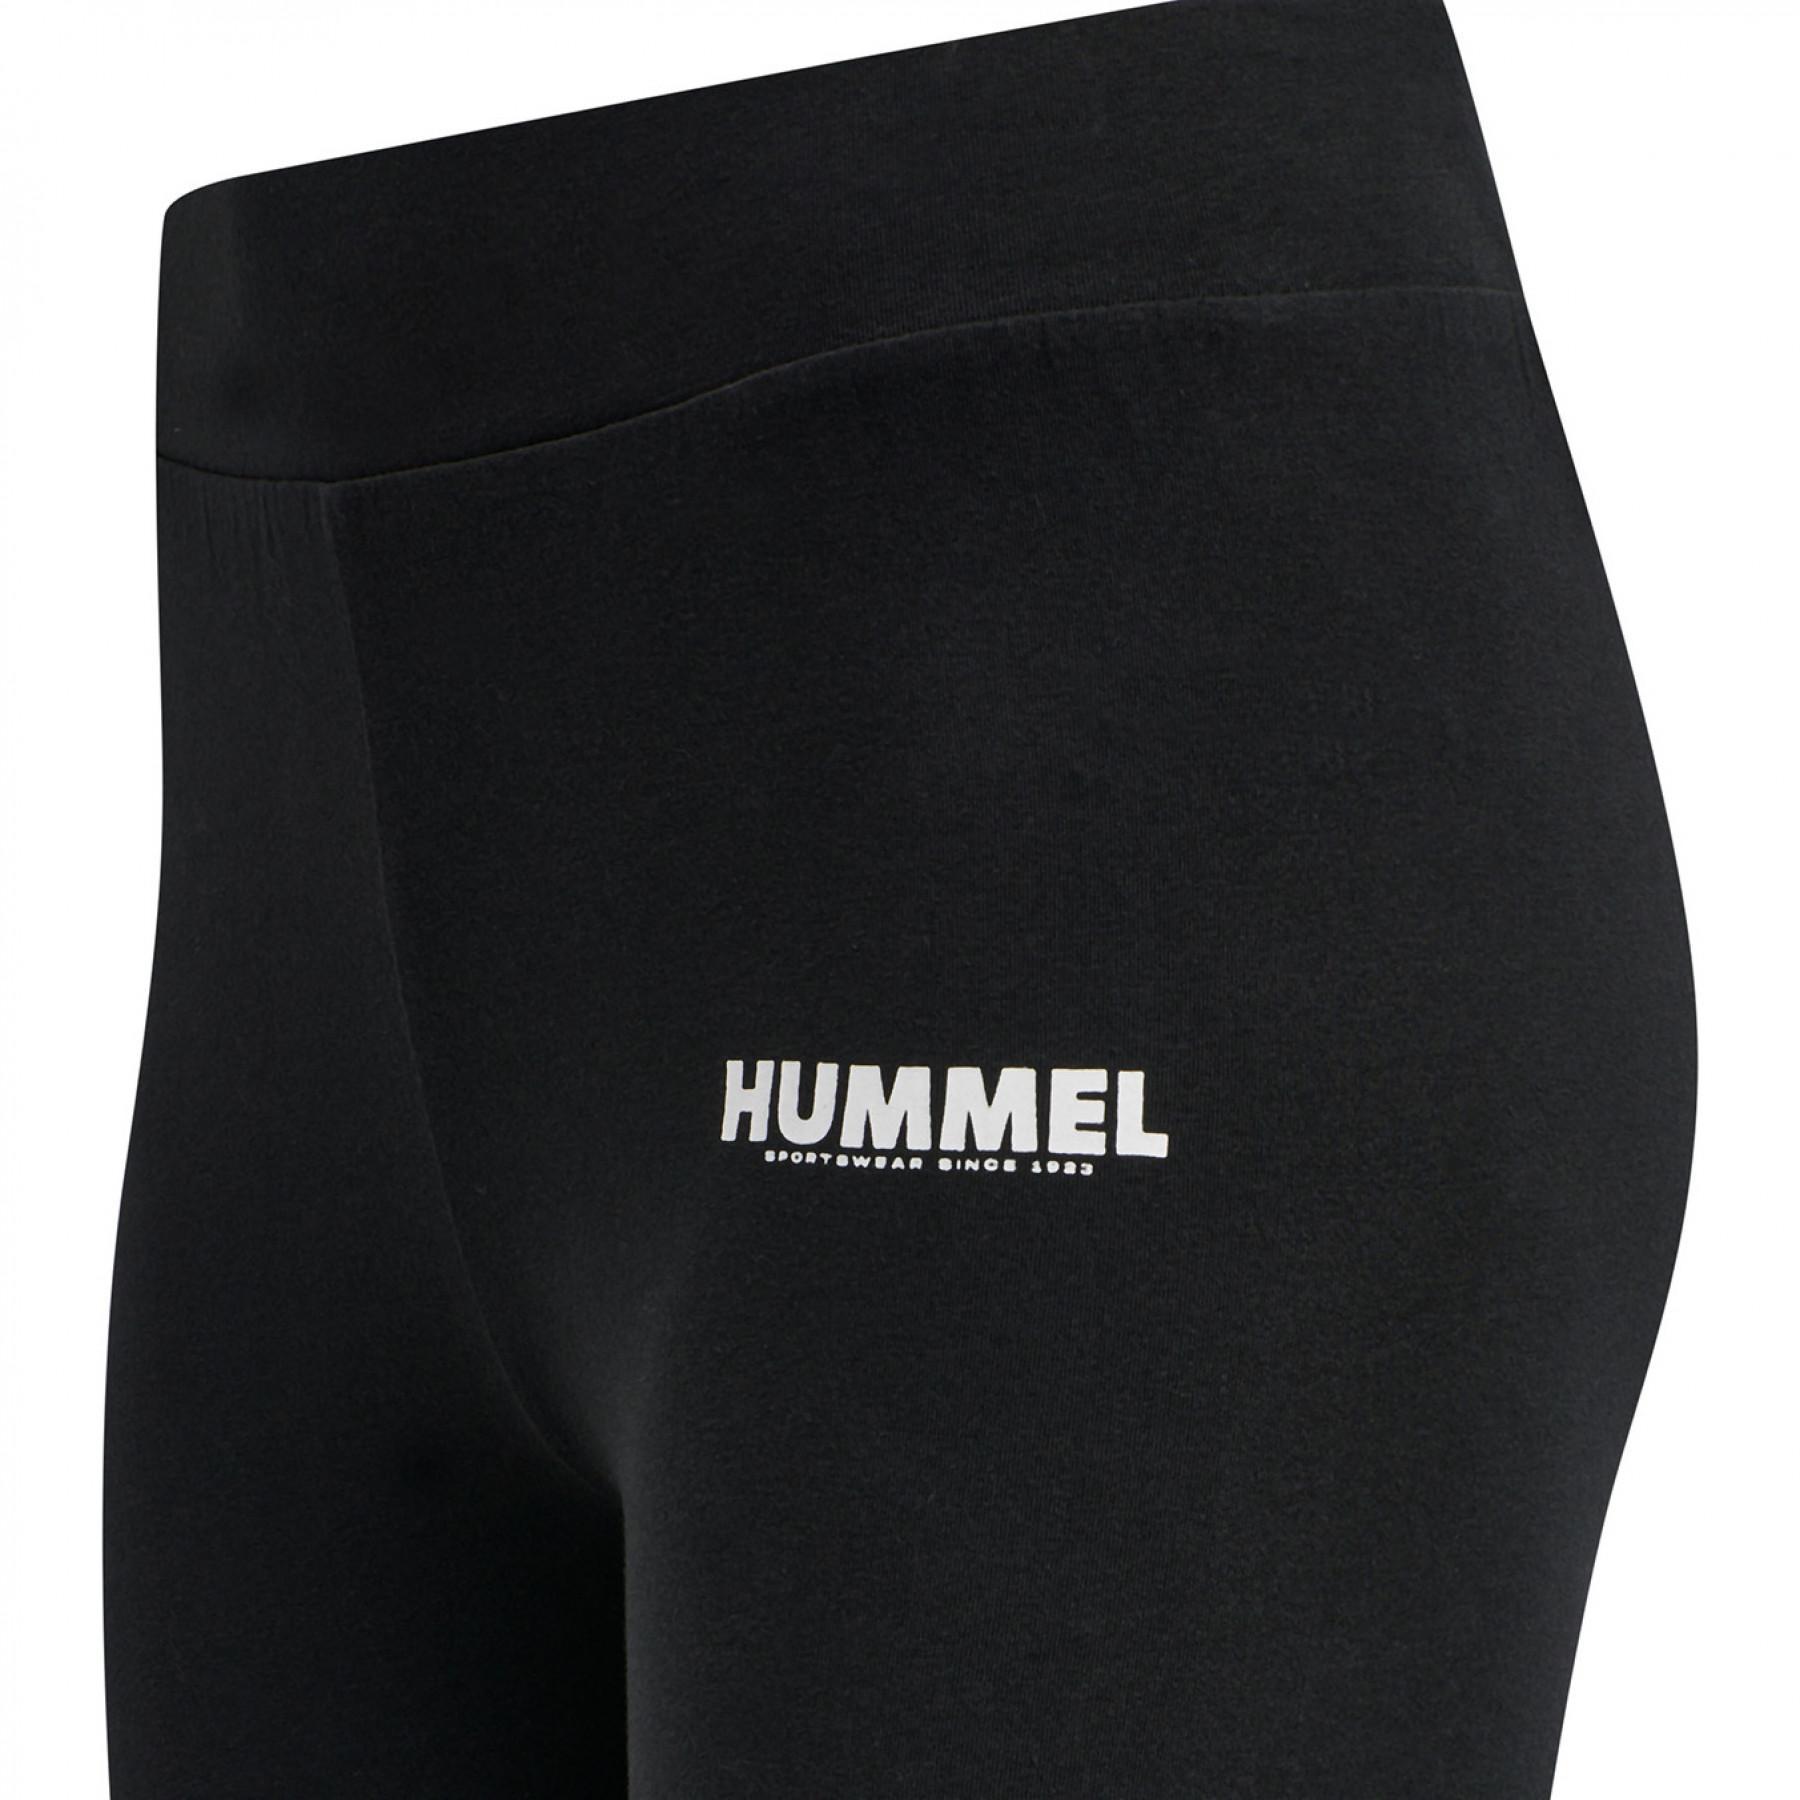 Women's high waist tights Hummel hmllegacy